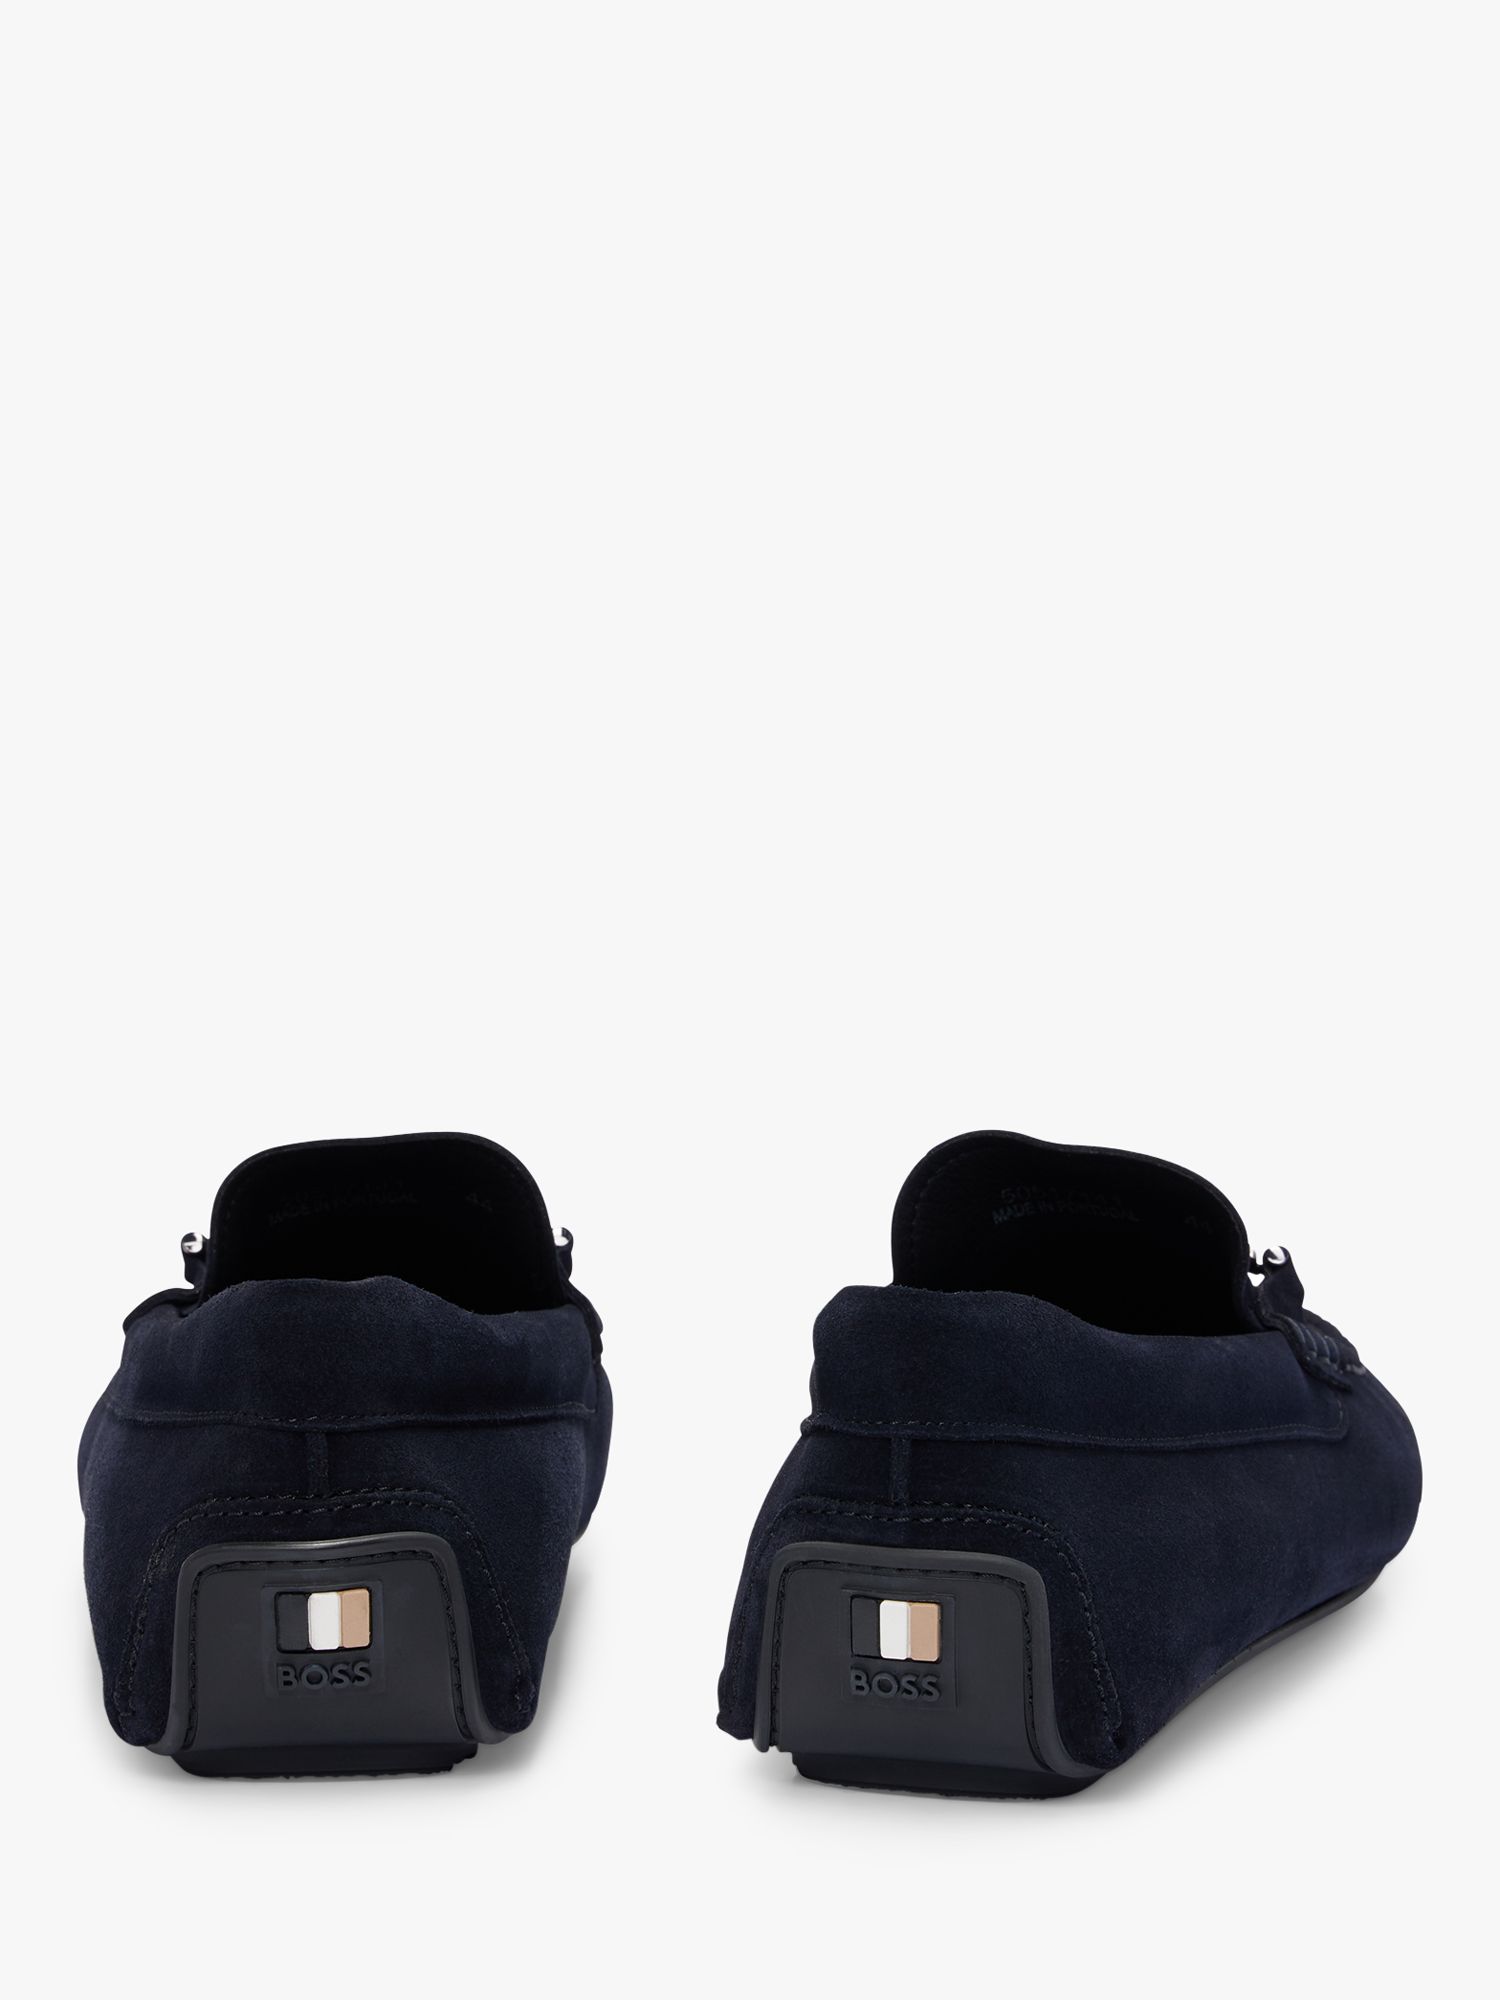 BOSS Noel Leather Loafers, Dark Blue, 10